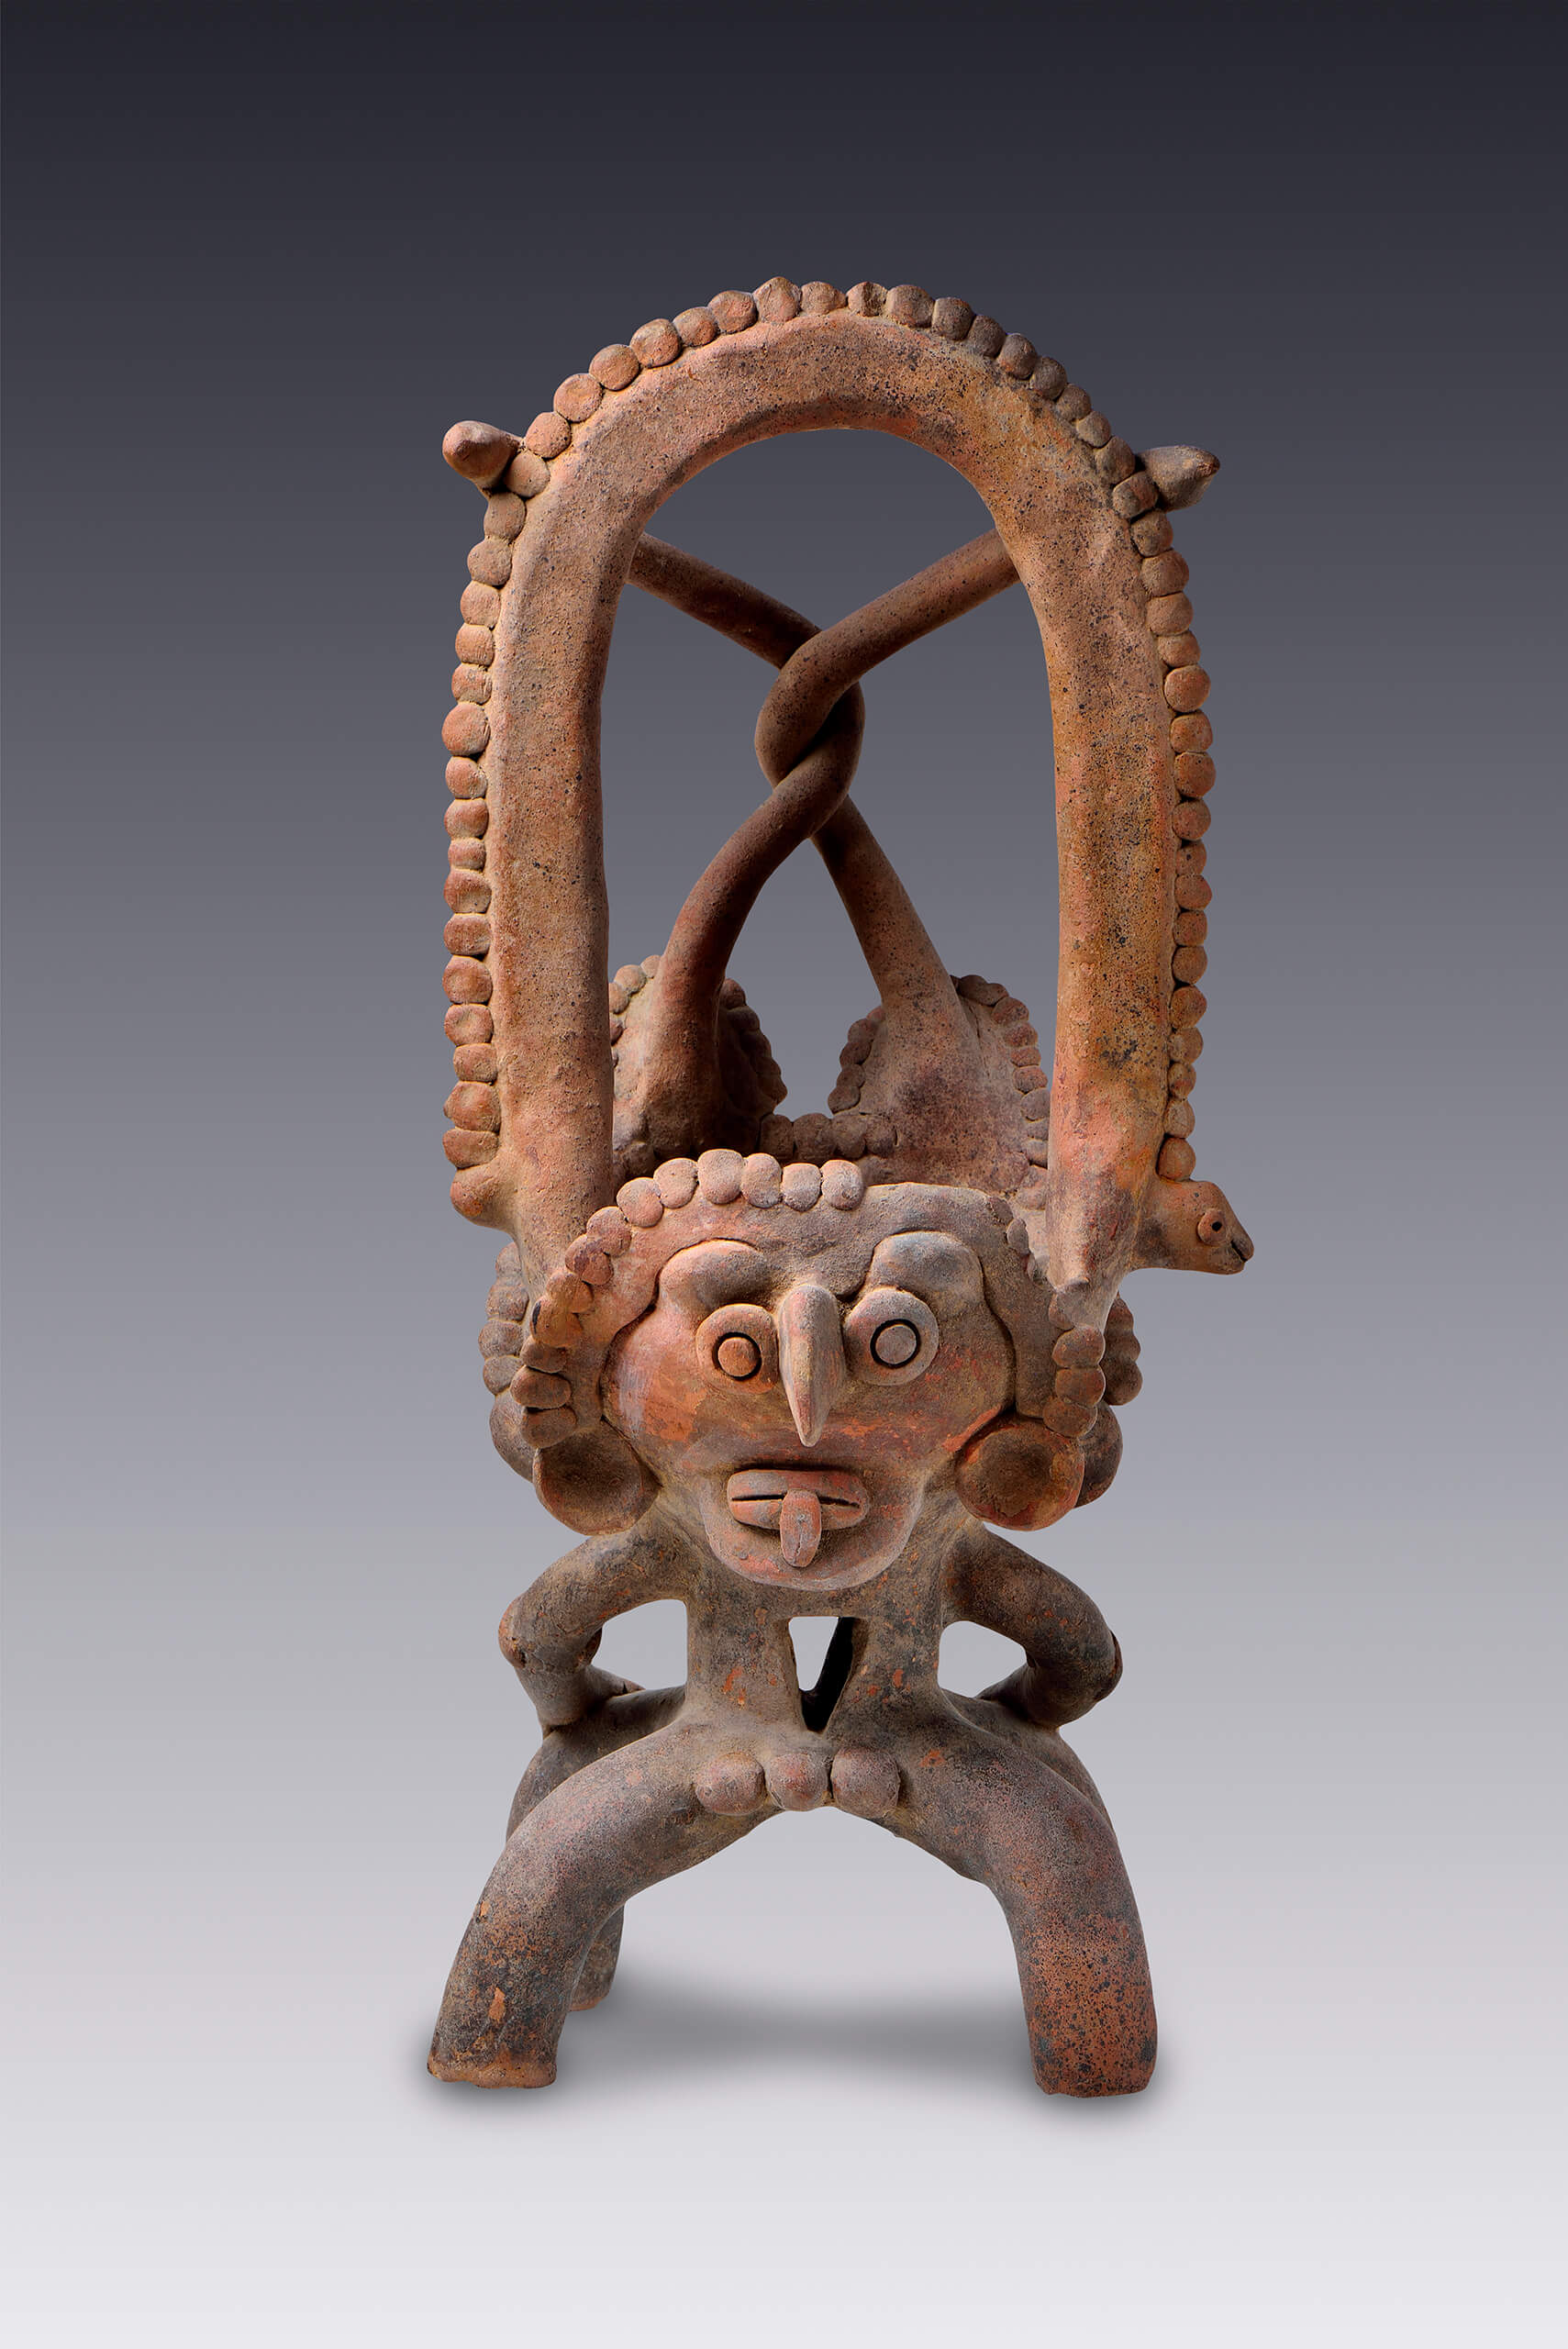 Brasero con una posible alegoría de la fertilidad masculina | El México antiguo. Salas de Arte Prehispánico | Museo Amparo, Puebla